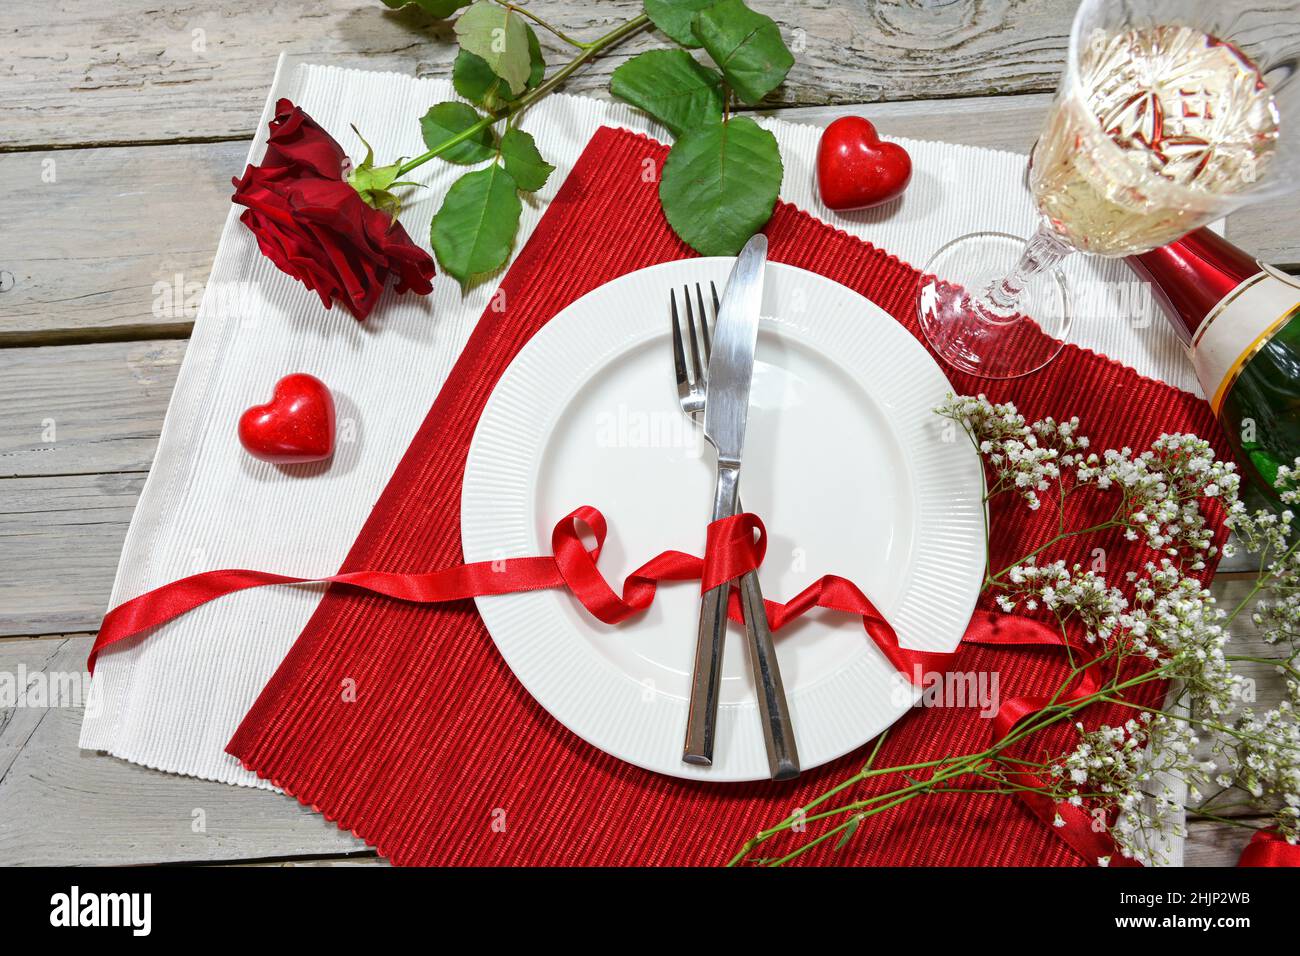 Table romantique avec une rose rouge, champagne et deux coeurs, assiette et couverts sur des serviettes rouges et blanches et une table rustique en bois, vue panoramique Banque D'Images